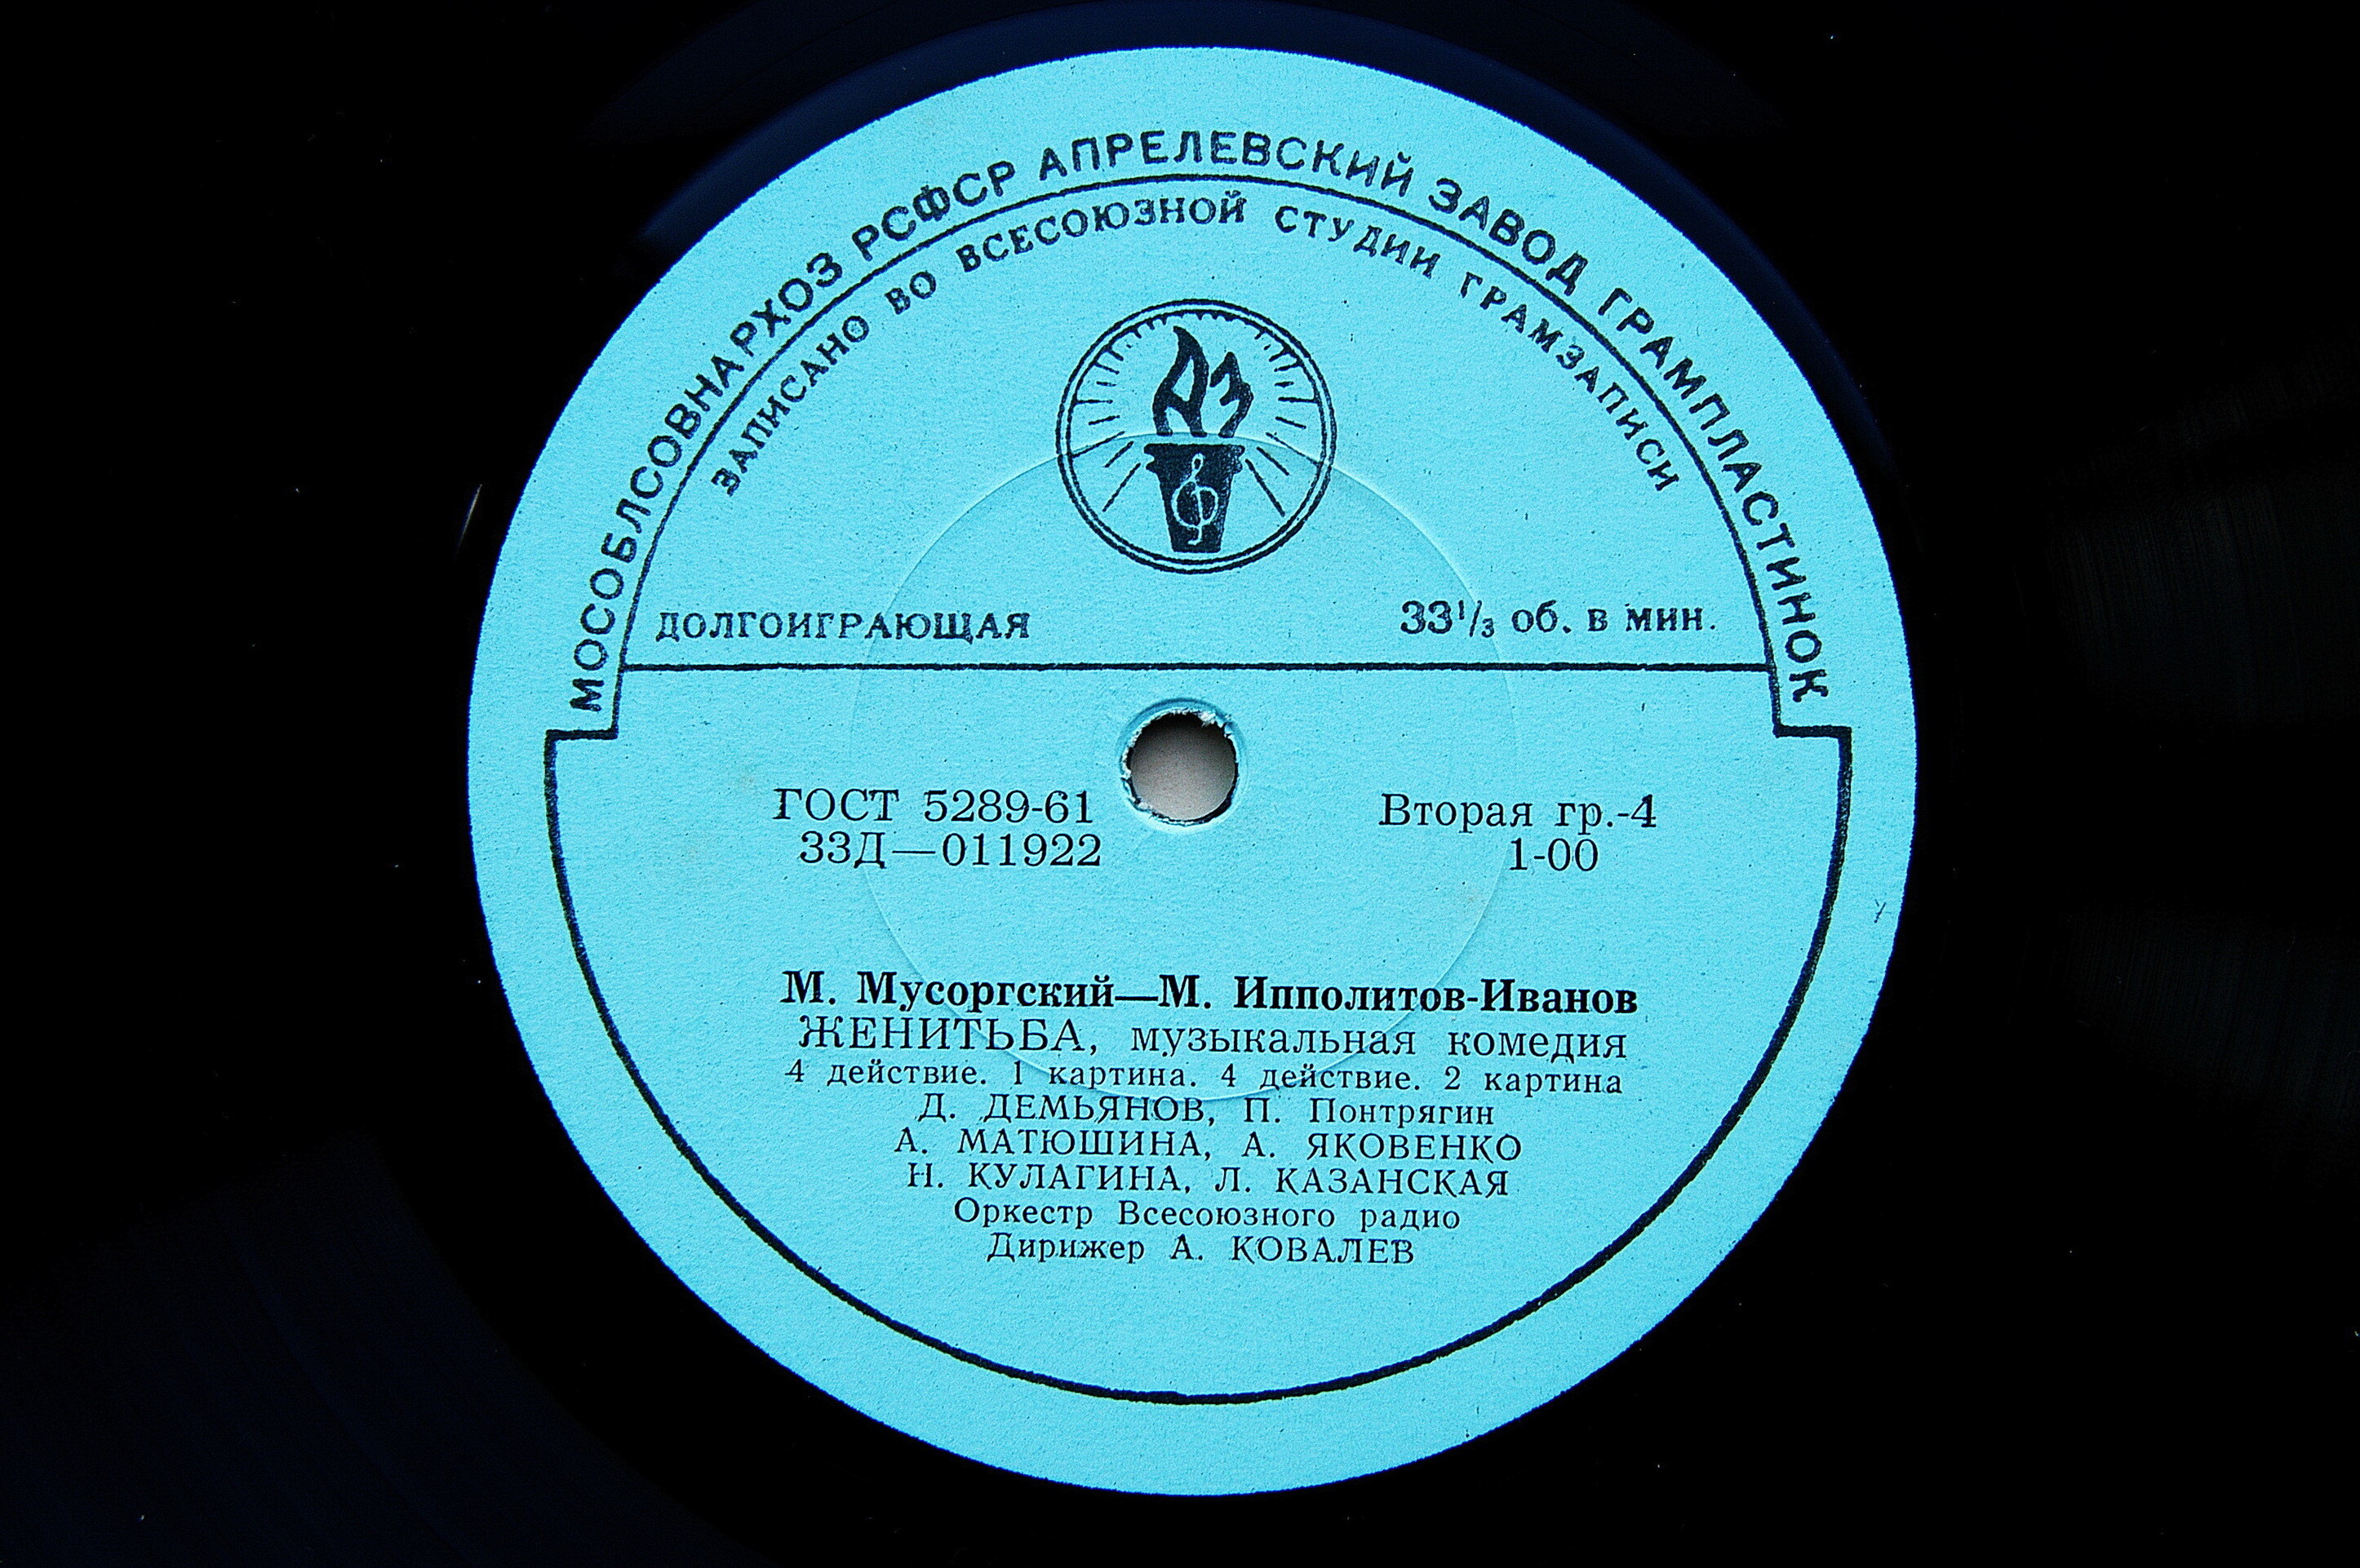 М. МУСОРГСКИЙ - М. ИППОЛИТОВ-ИВАНОВ (1859-1935)  „Женитьба", музыкальная комедия в 4 действиях